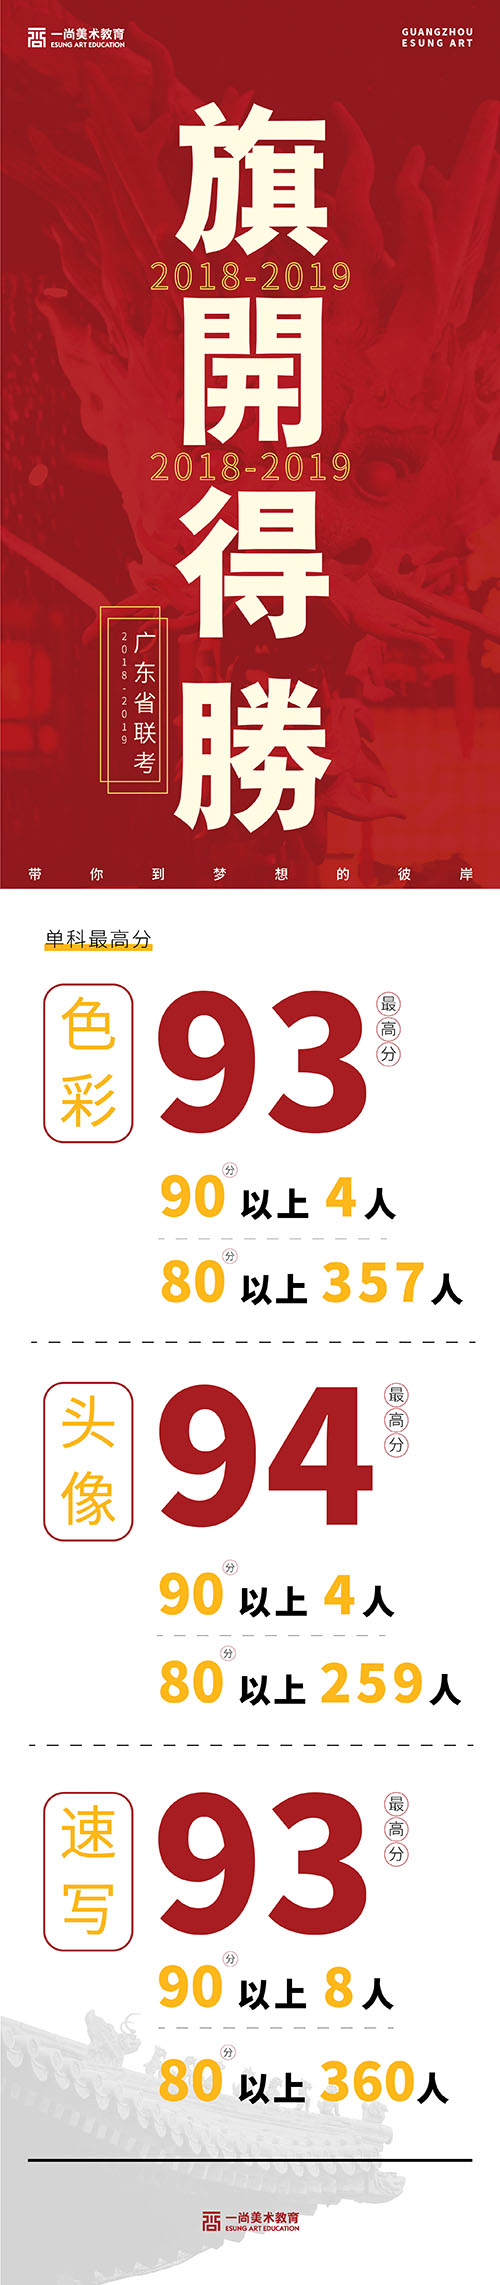 看看广州排名前十画室的2019年联考成绩榜 绝对震撼！1